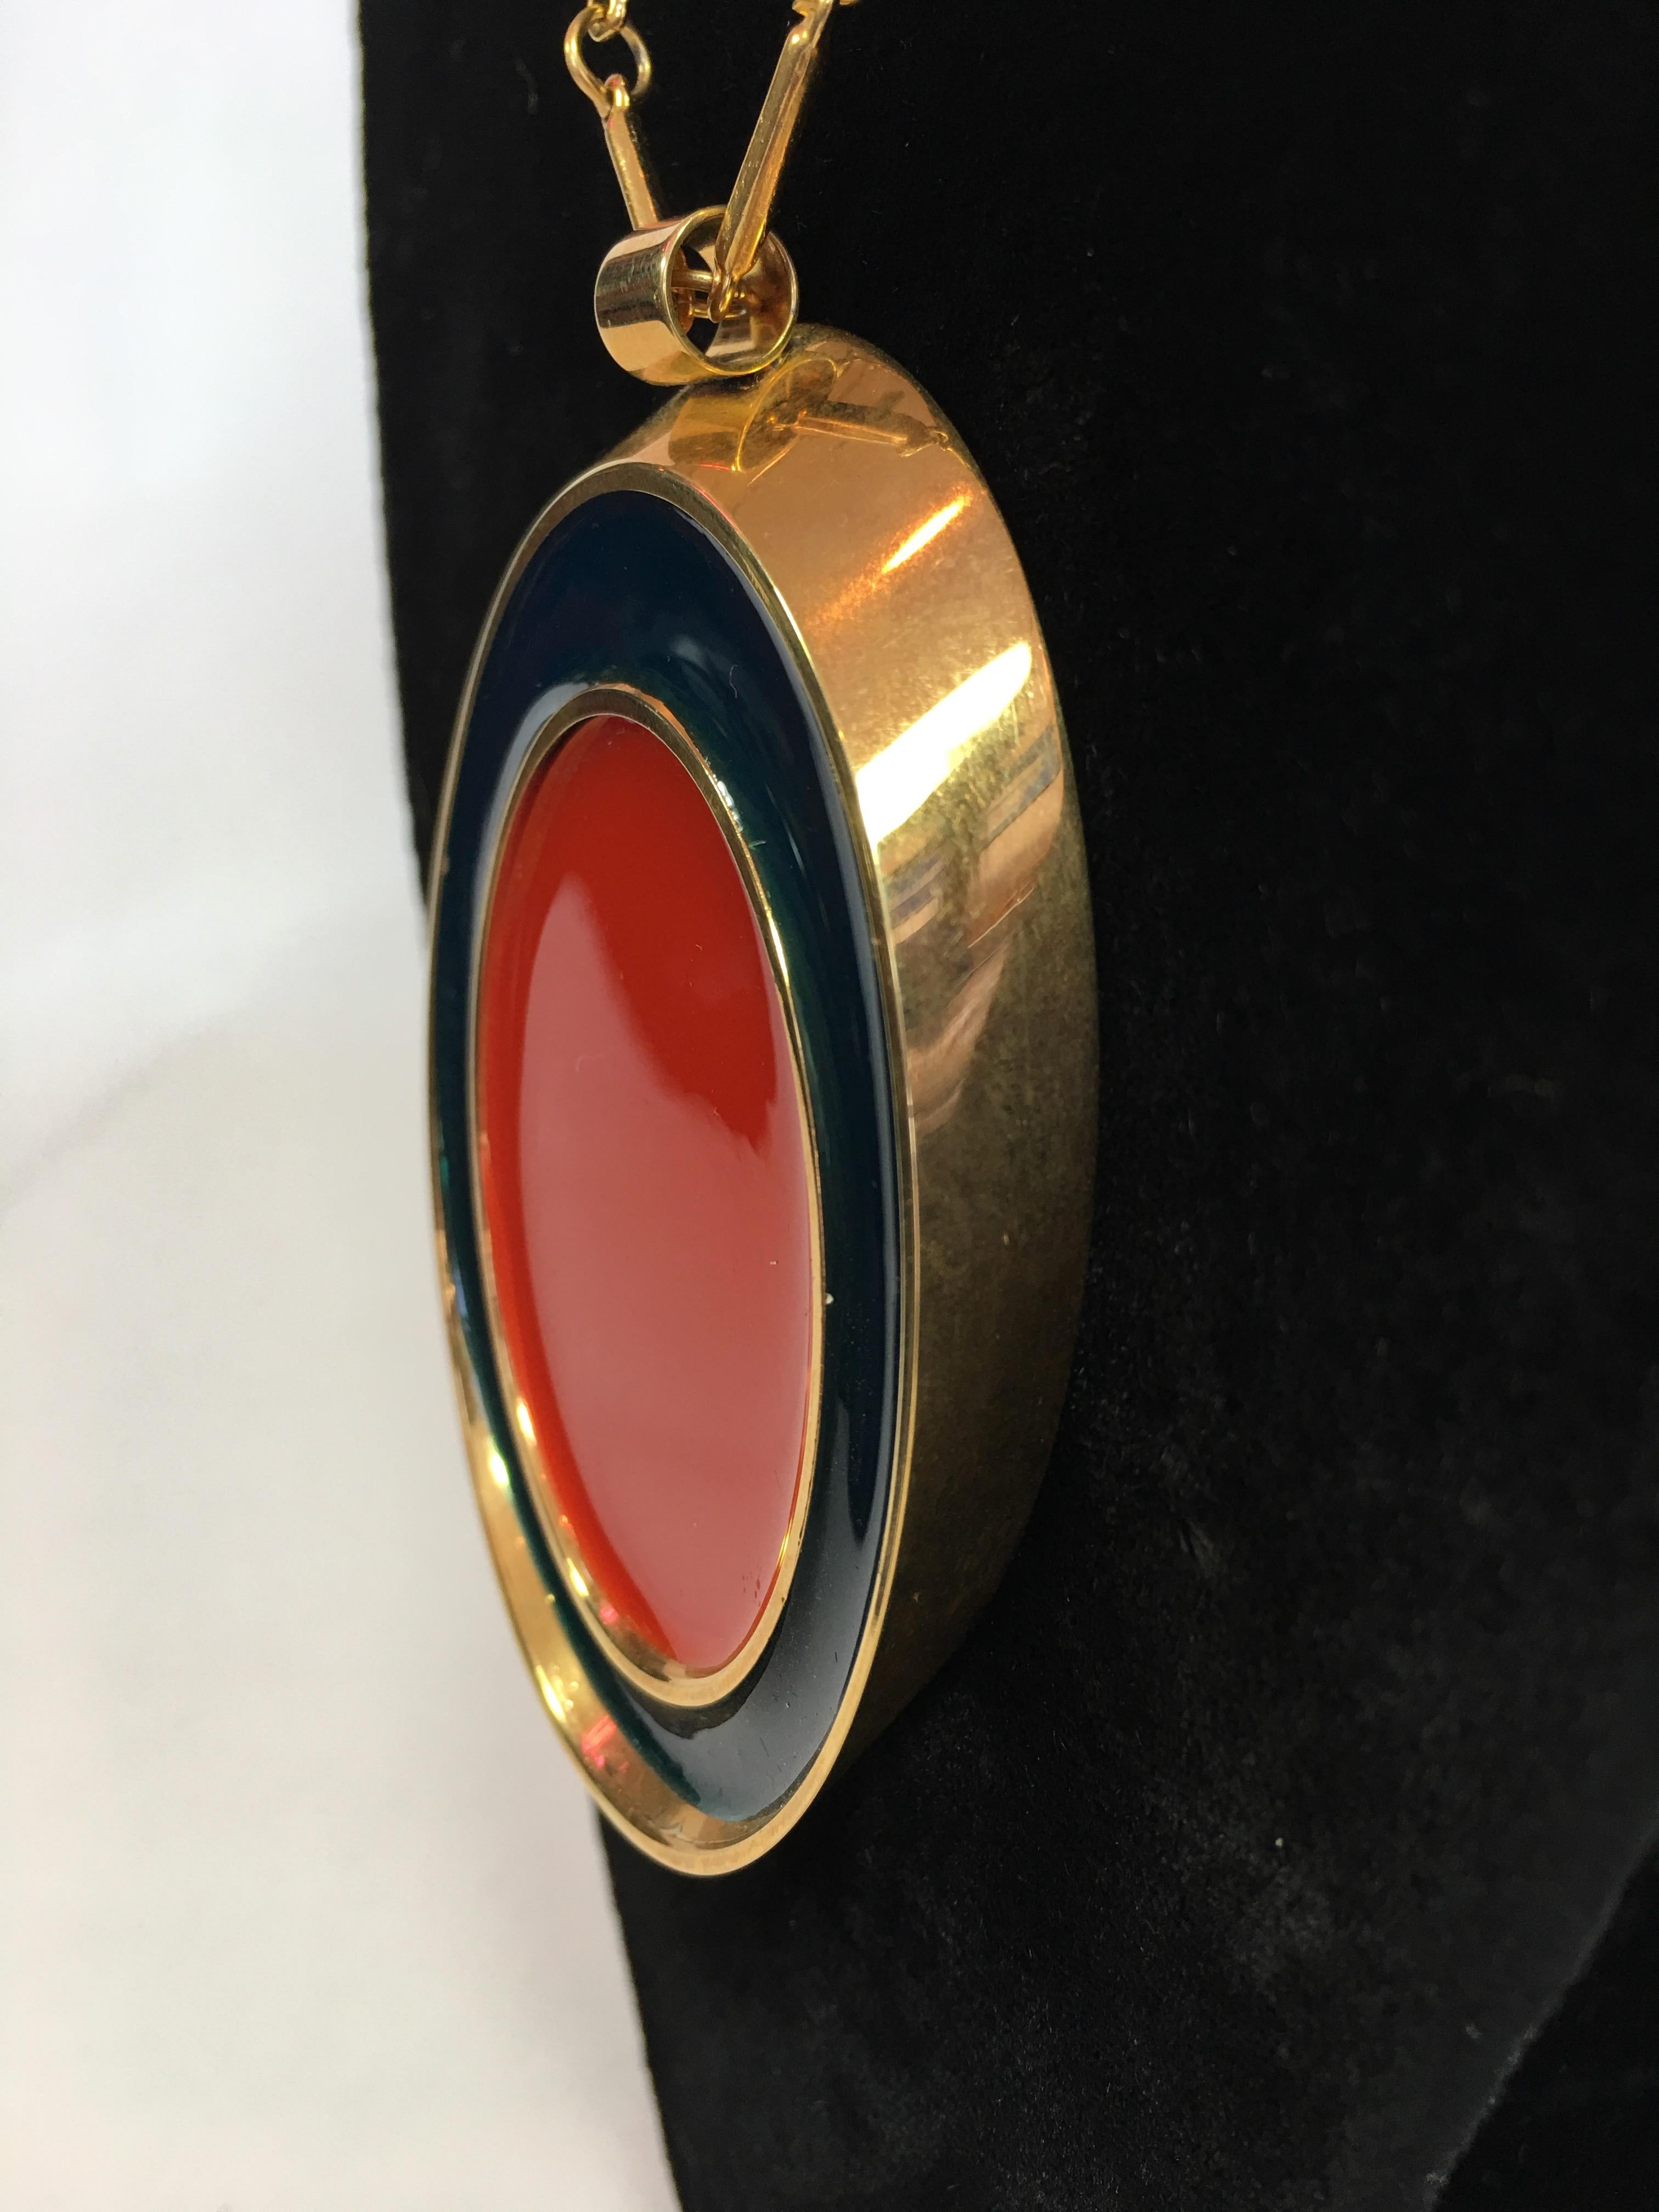 Collier Guy Laroche en or avec pendentif ovale en émail rouge et marine des années 1960. Le pendentif est réversible et présente le même motif Marine + Rouge des deux côtés. La chaîne fait partie de la caractéristique de conception. Étiquette Guy